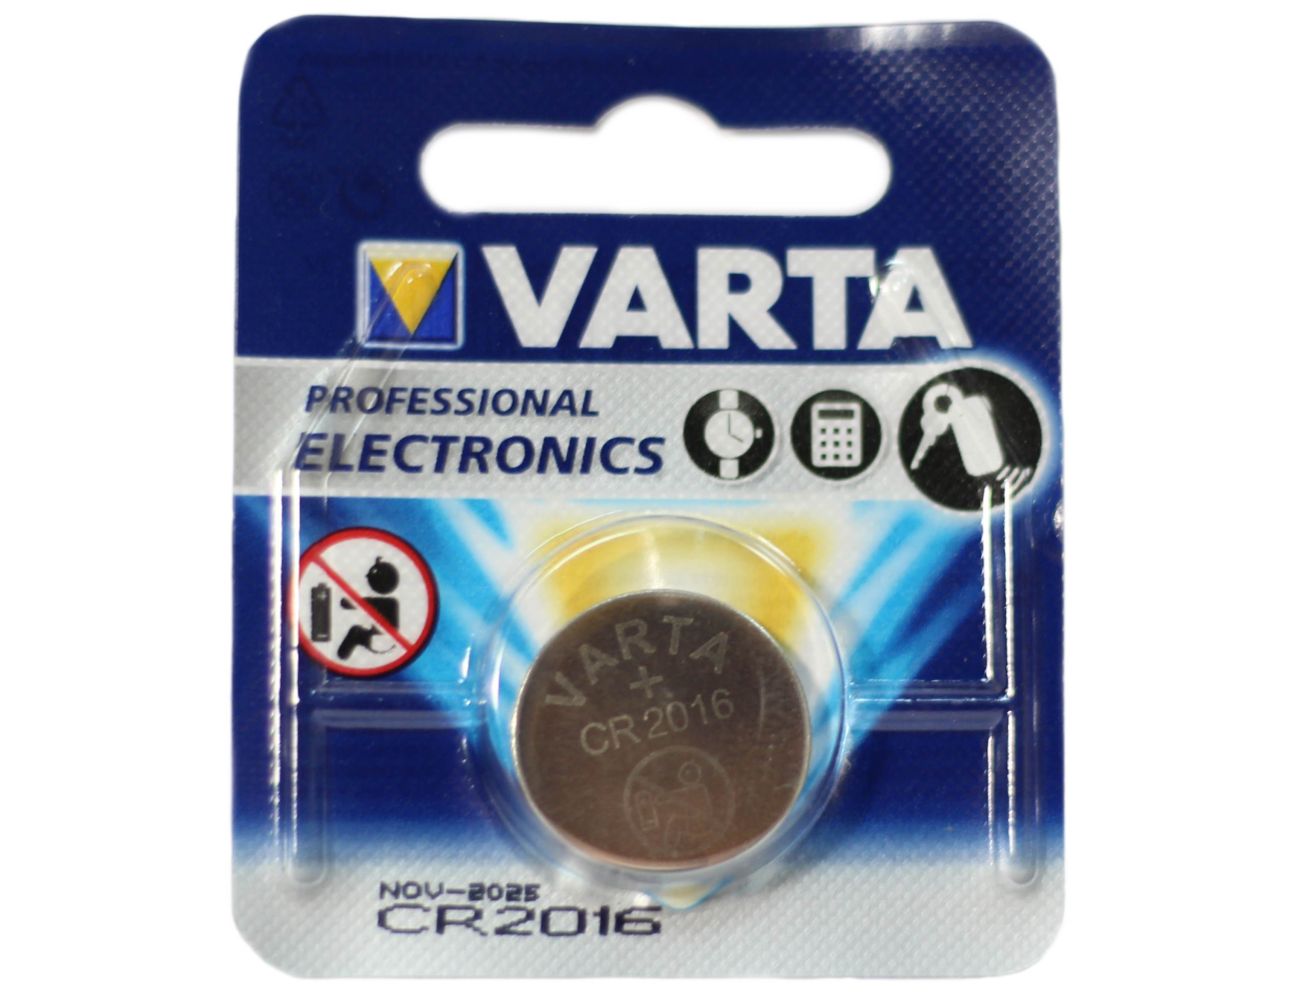 Батарейка CR 2016 Varta Professional Electronics 3V Литиевая 06016101401 1 шт